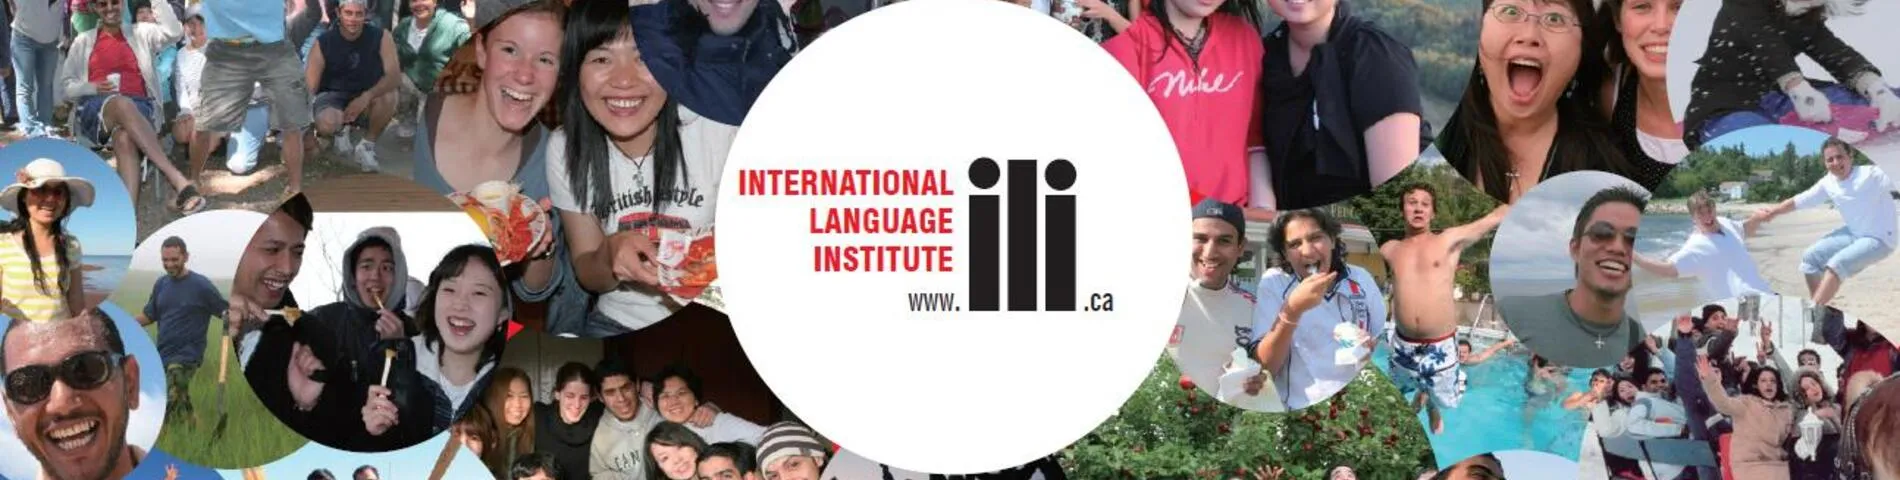 ILI - International Language Institute resim 1